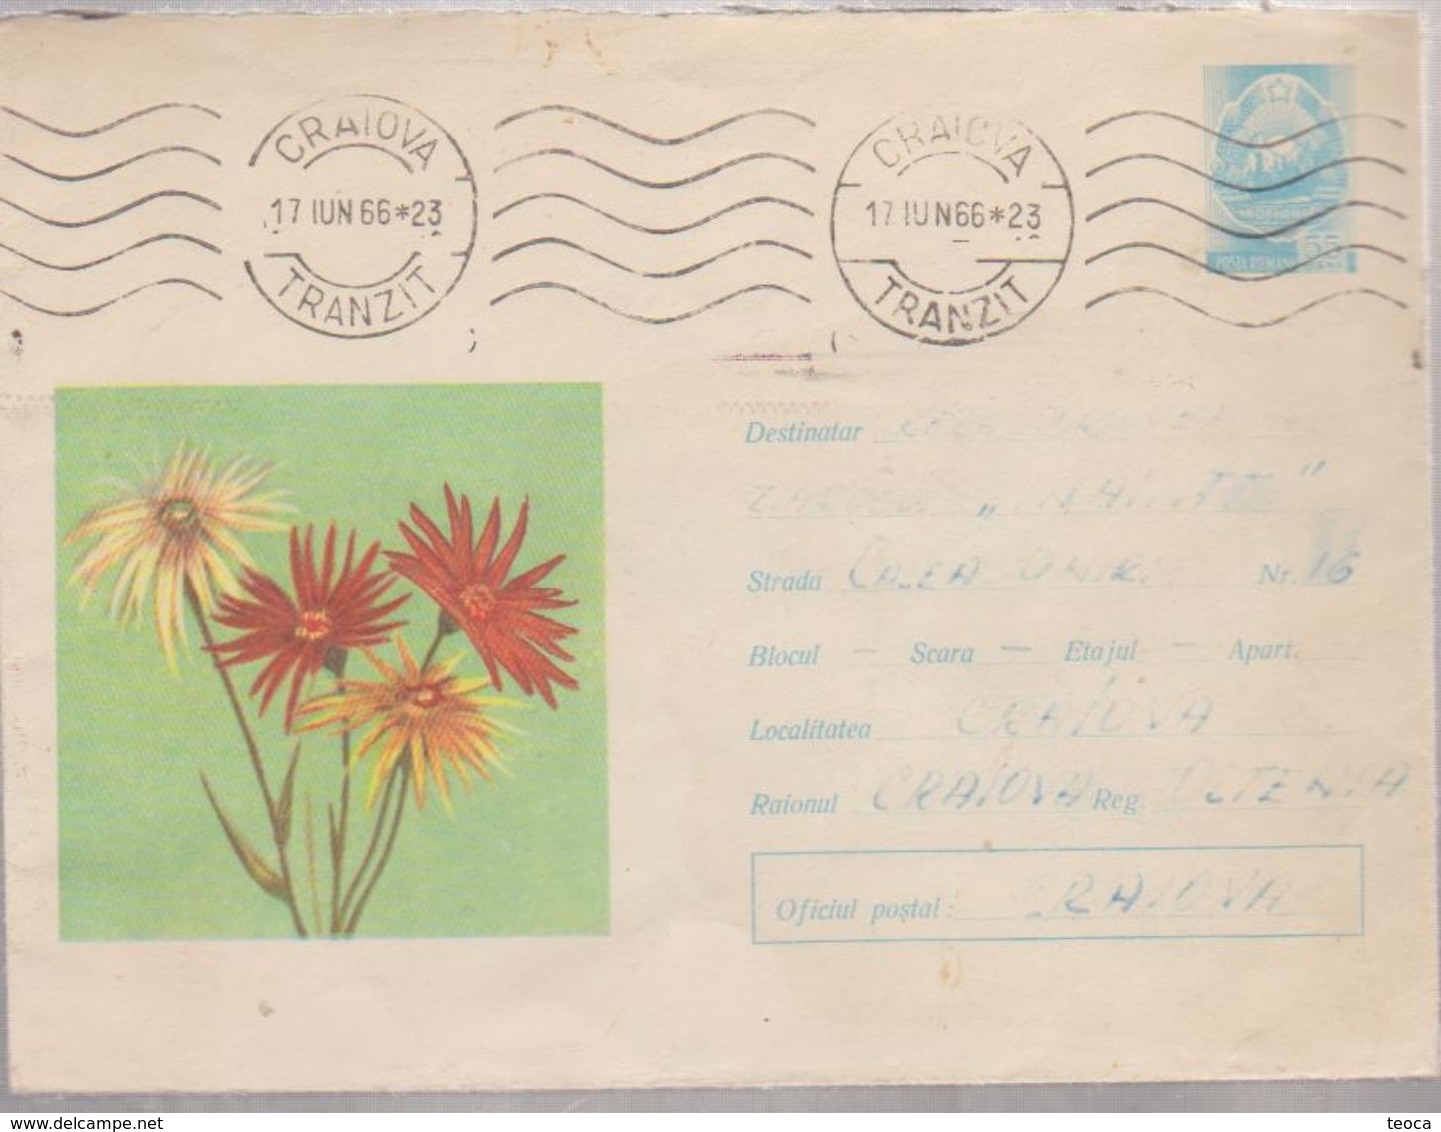 PLANT FLOWER, Cover Envelope ROMANIA 1966 COVER STATIONERY,POSTAL STATIONERY ROMANIA 1966, CANCEL  CRAIOVA - Cartas & Documentos